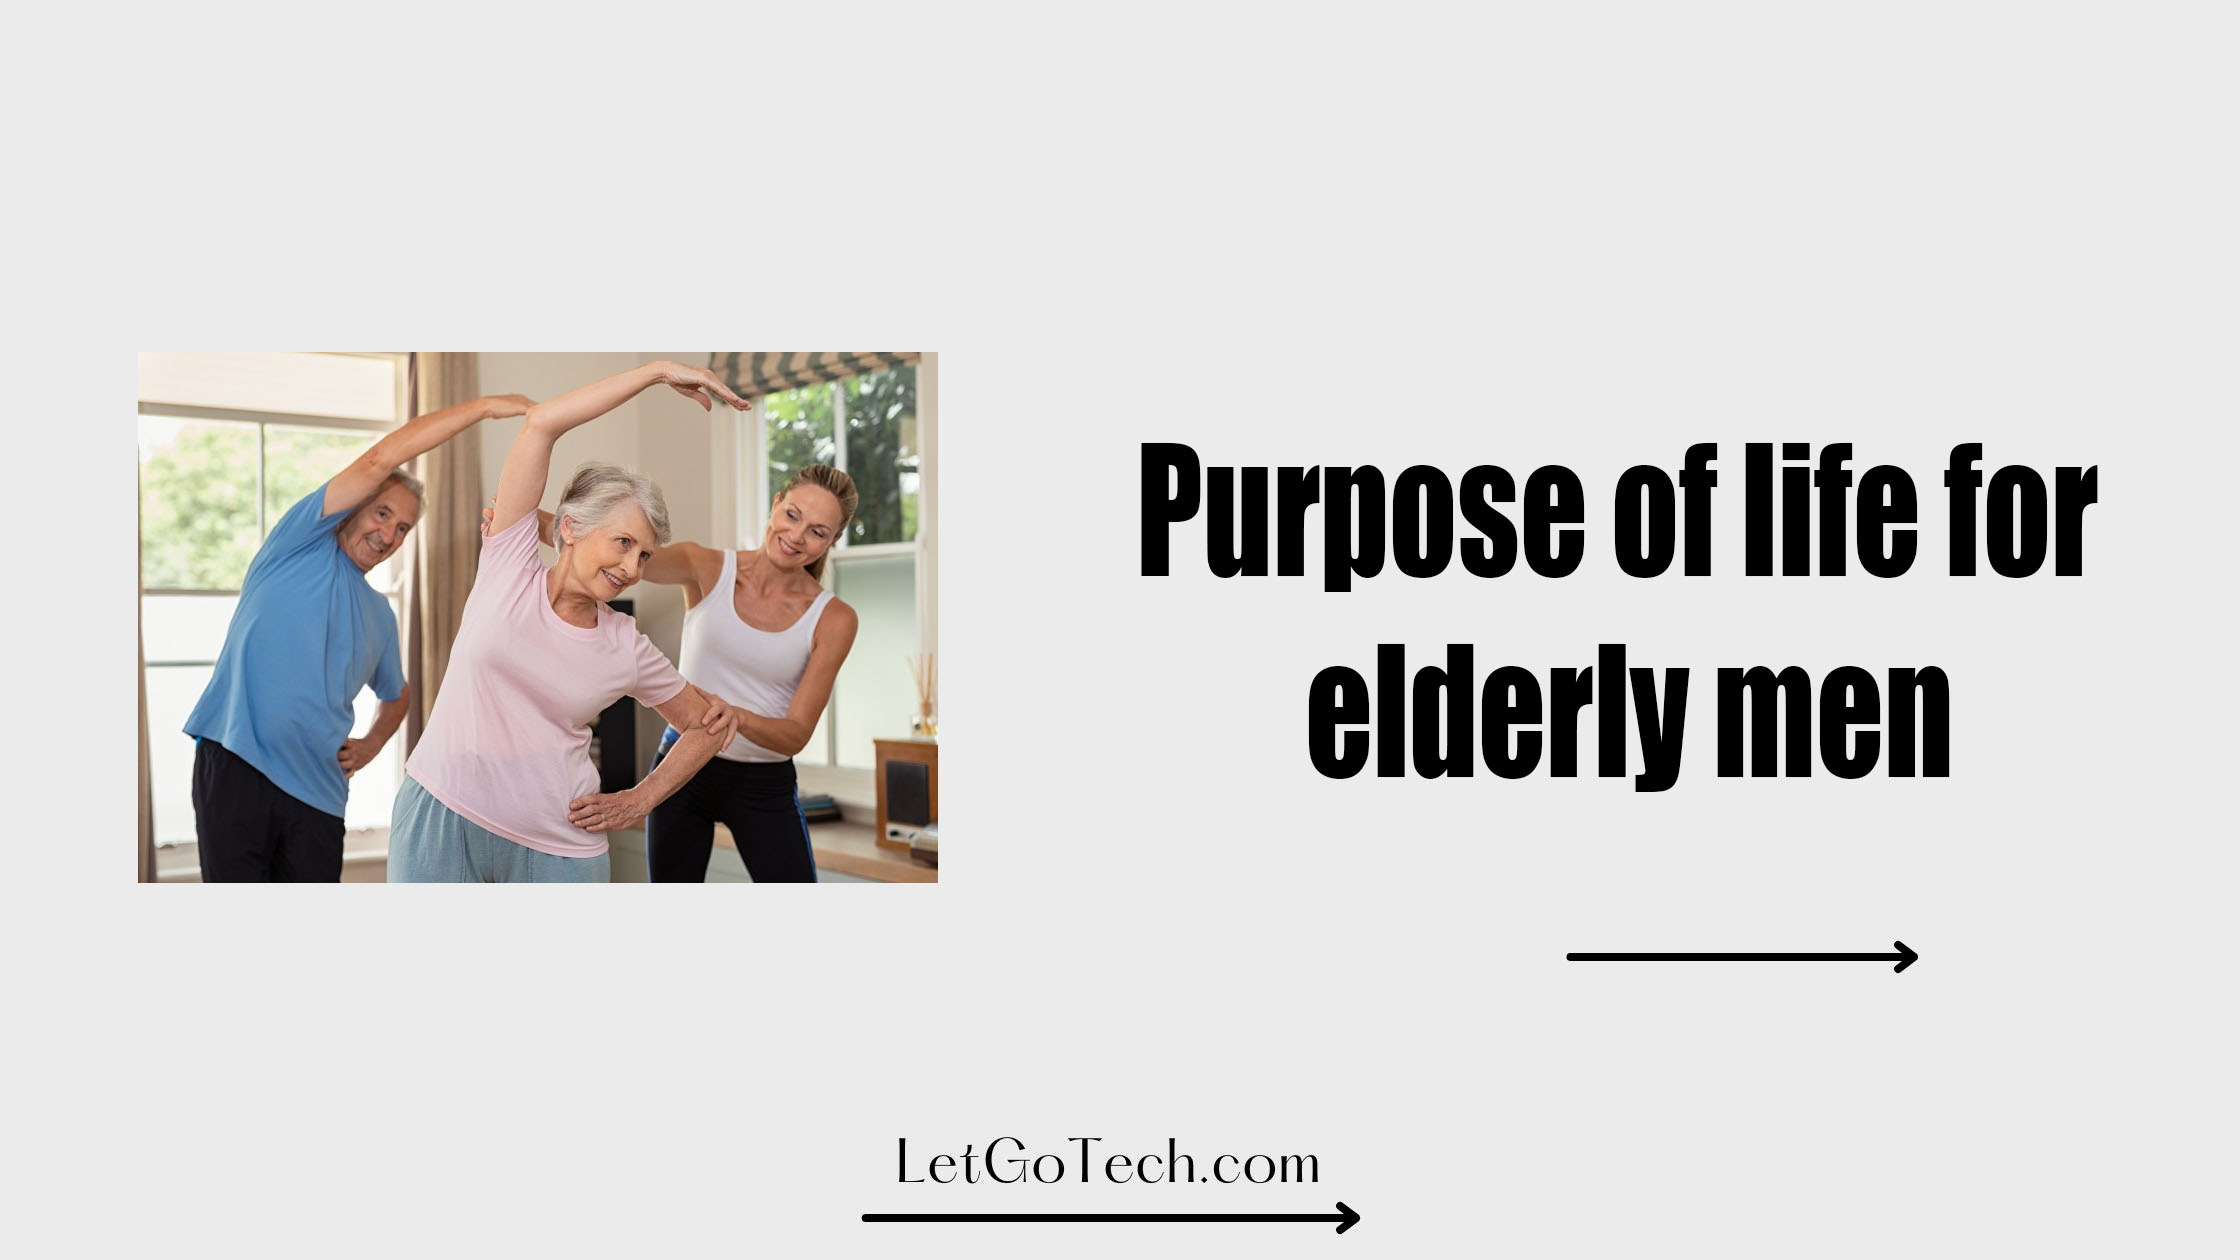 Purpose of life for elderly men